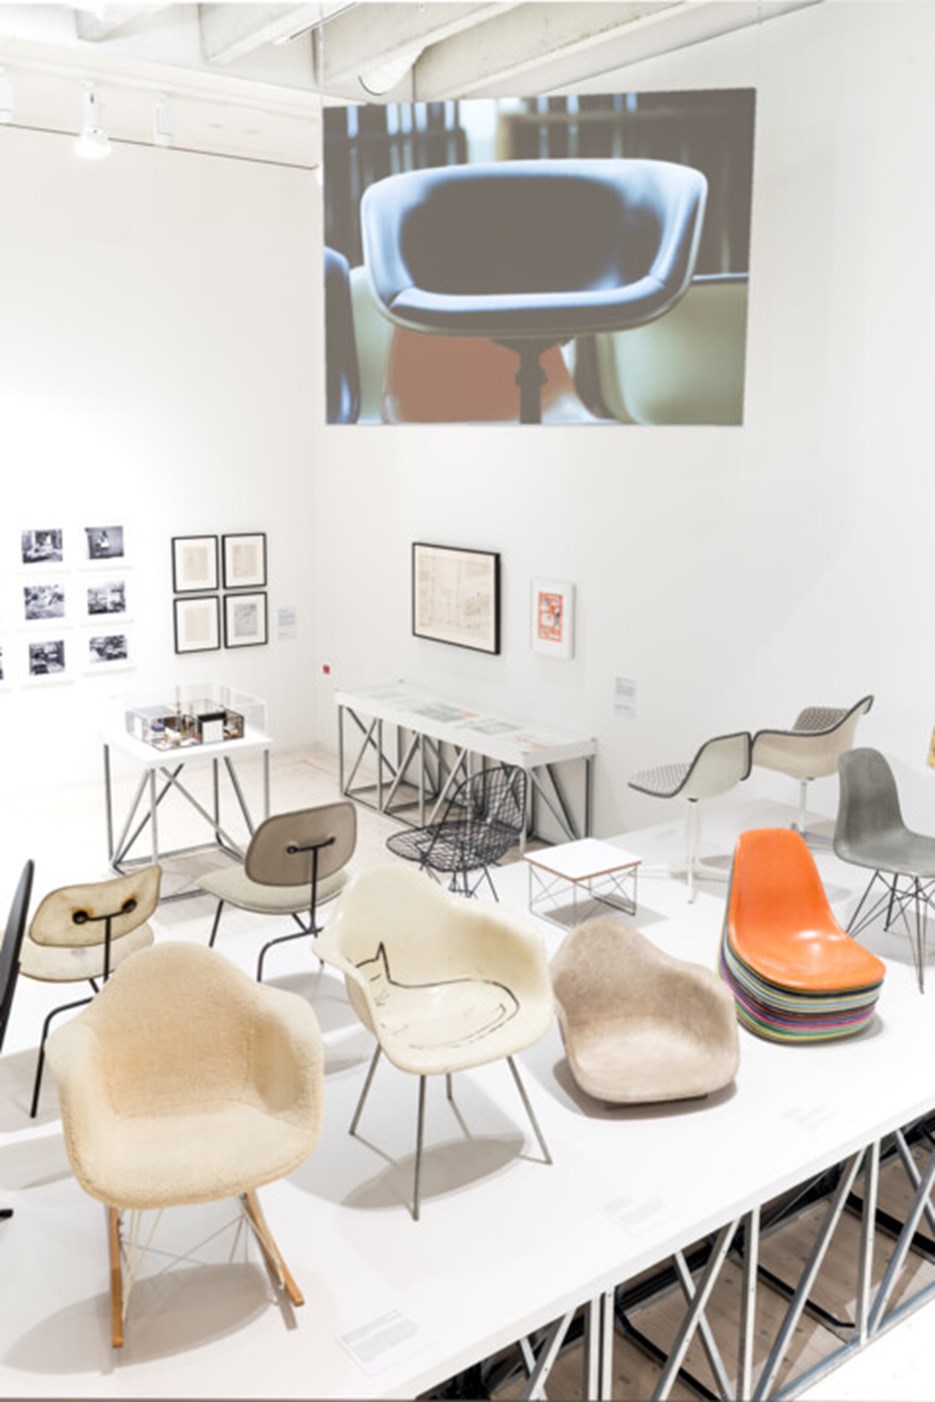 Charles och Ray Eames, Vy från utställningen, Bildmuseet 2016